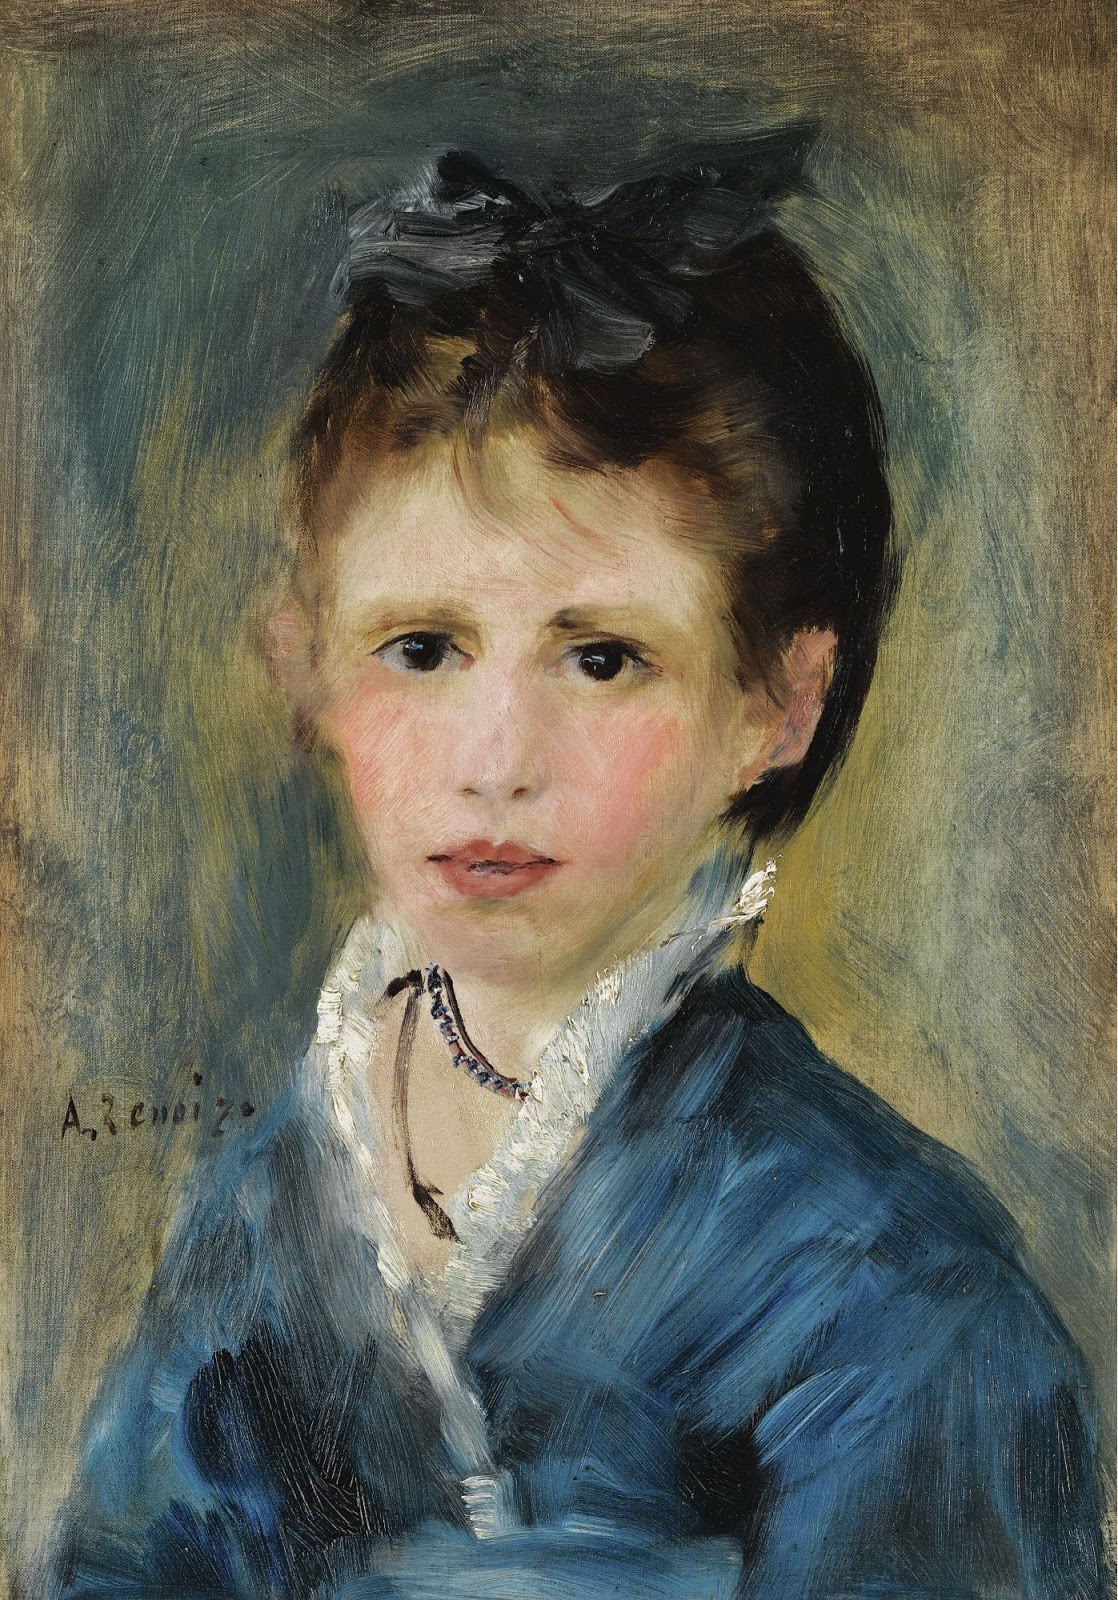 Pierre+Auguste+Renoir-1841-1-19 (836).jpg